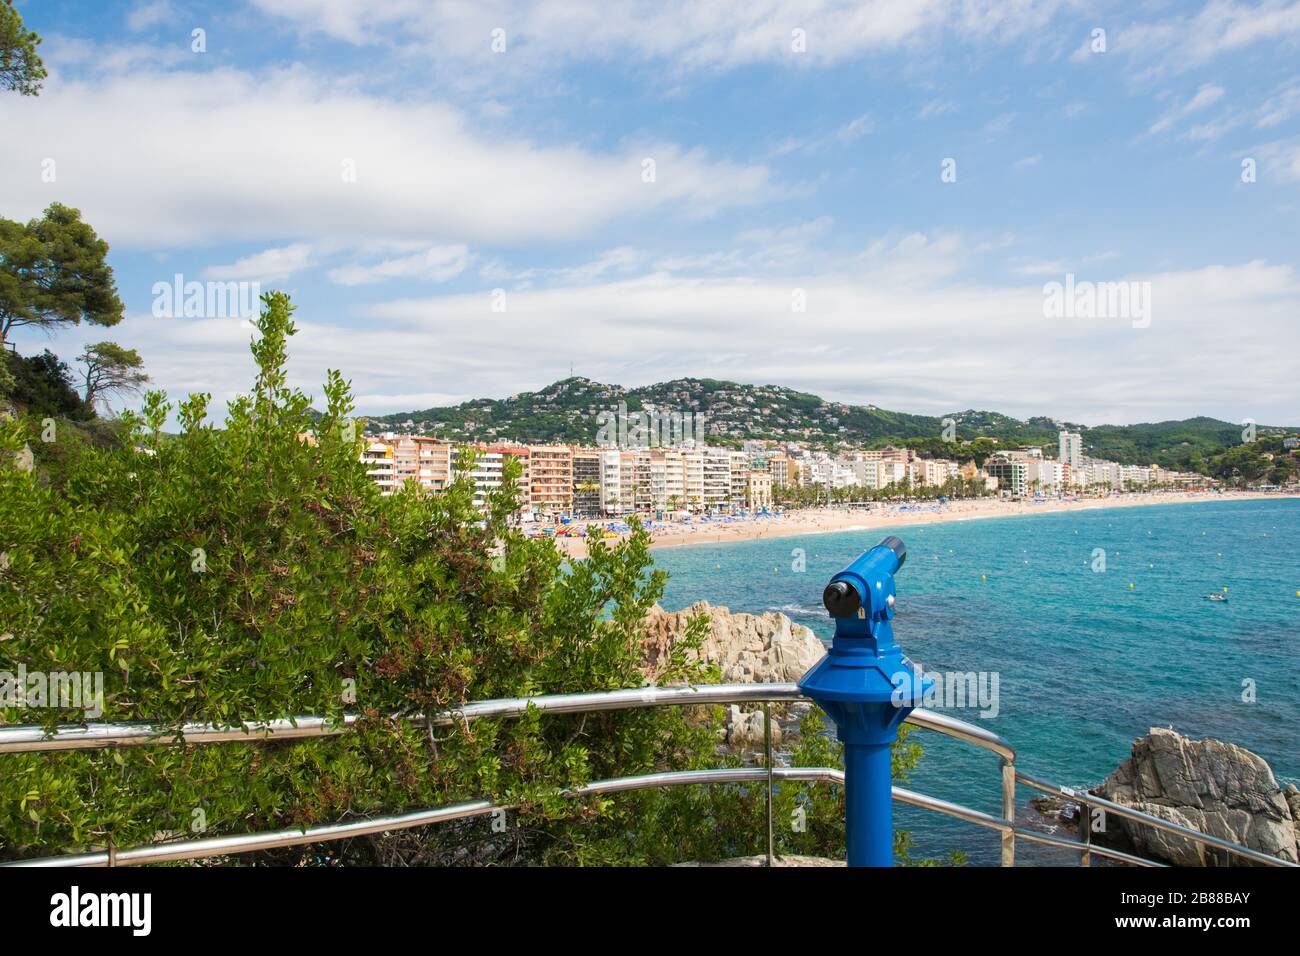 Hotels und Strand auf der Insel mit Teleskop, Meer, Palmen, Café, Menschen an der Meeresküste. Panoramaansicht der sealine in Spanien. Stockfoto